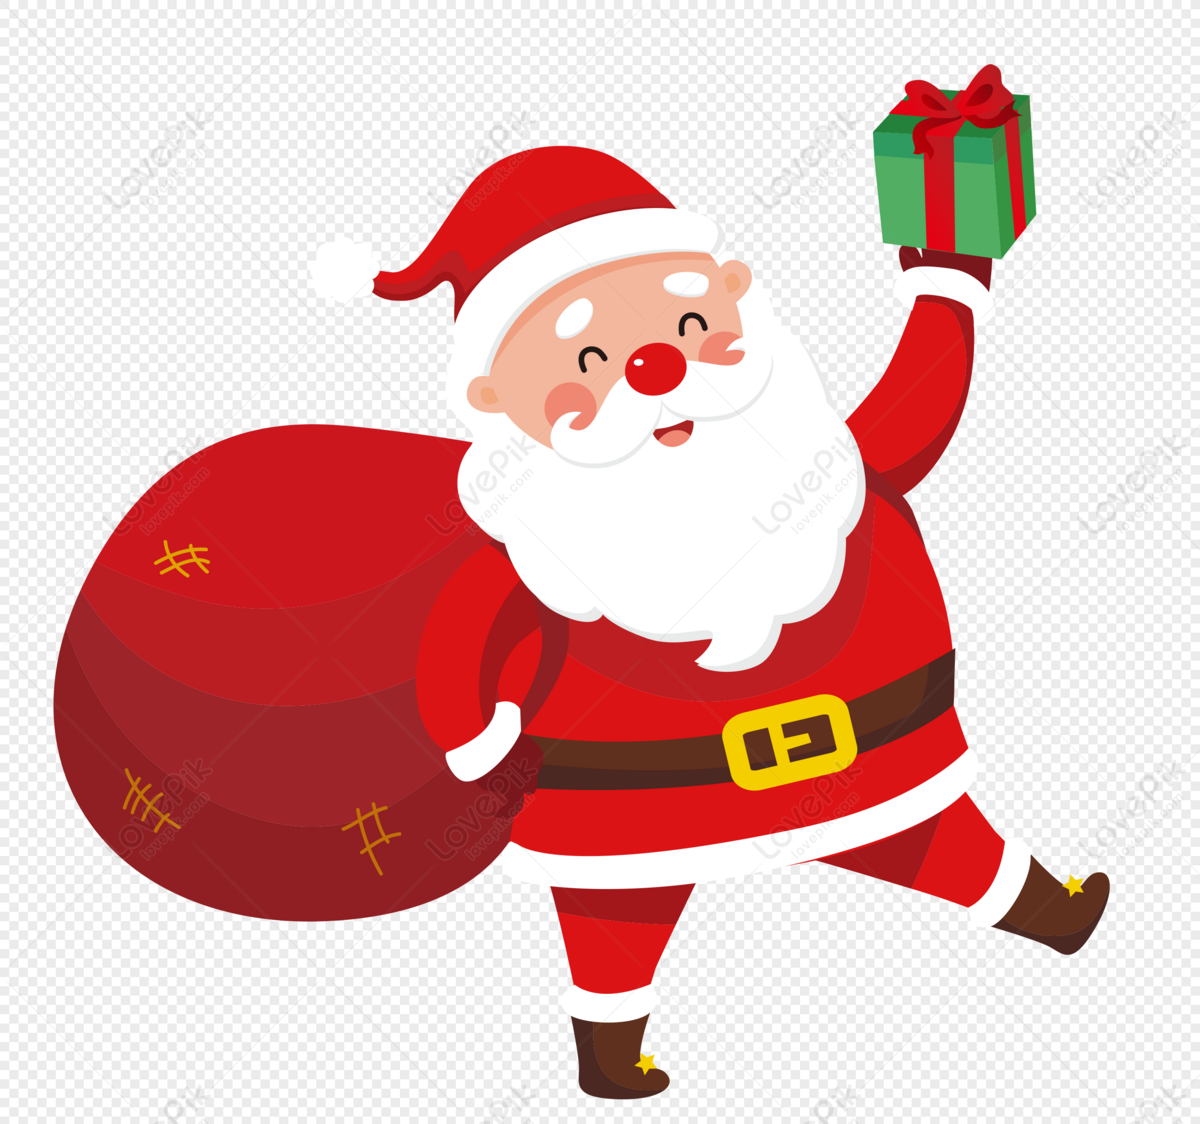 Ông già Noel: Hãy cùng xem qua những hình ảnh đáng yêu của ông già Noel trong trang phục truyền thống cùng đón một mùa lễ nhiều niềm vui, tình yêu và hy vọng.